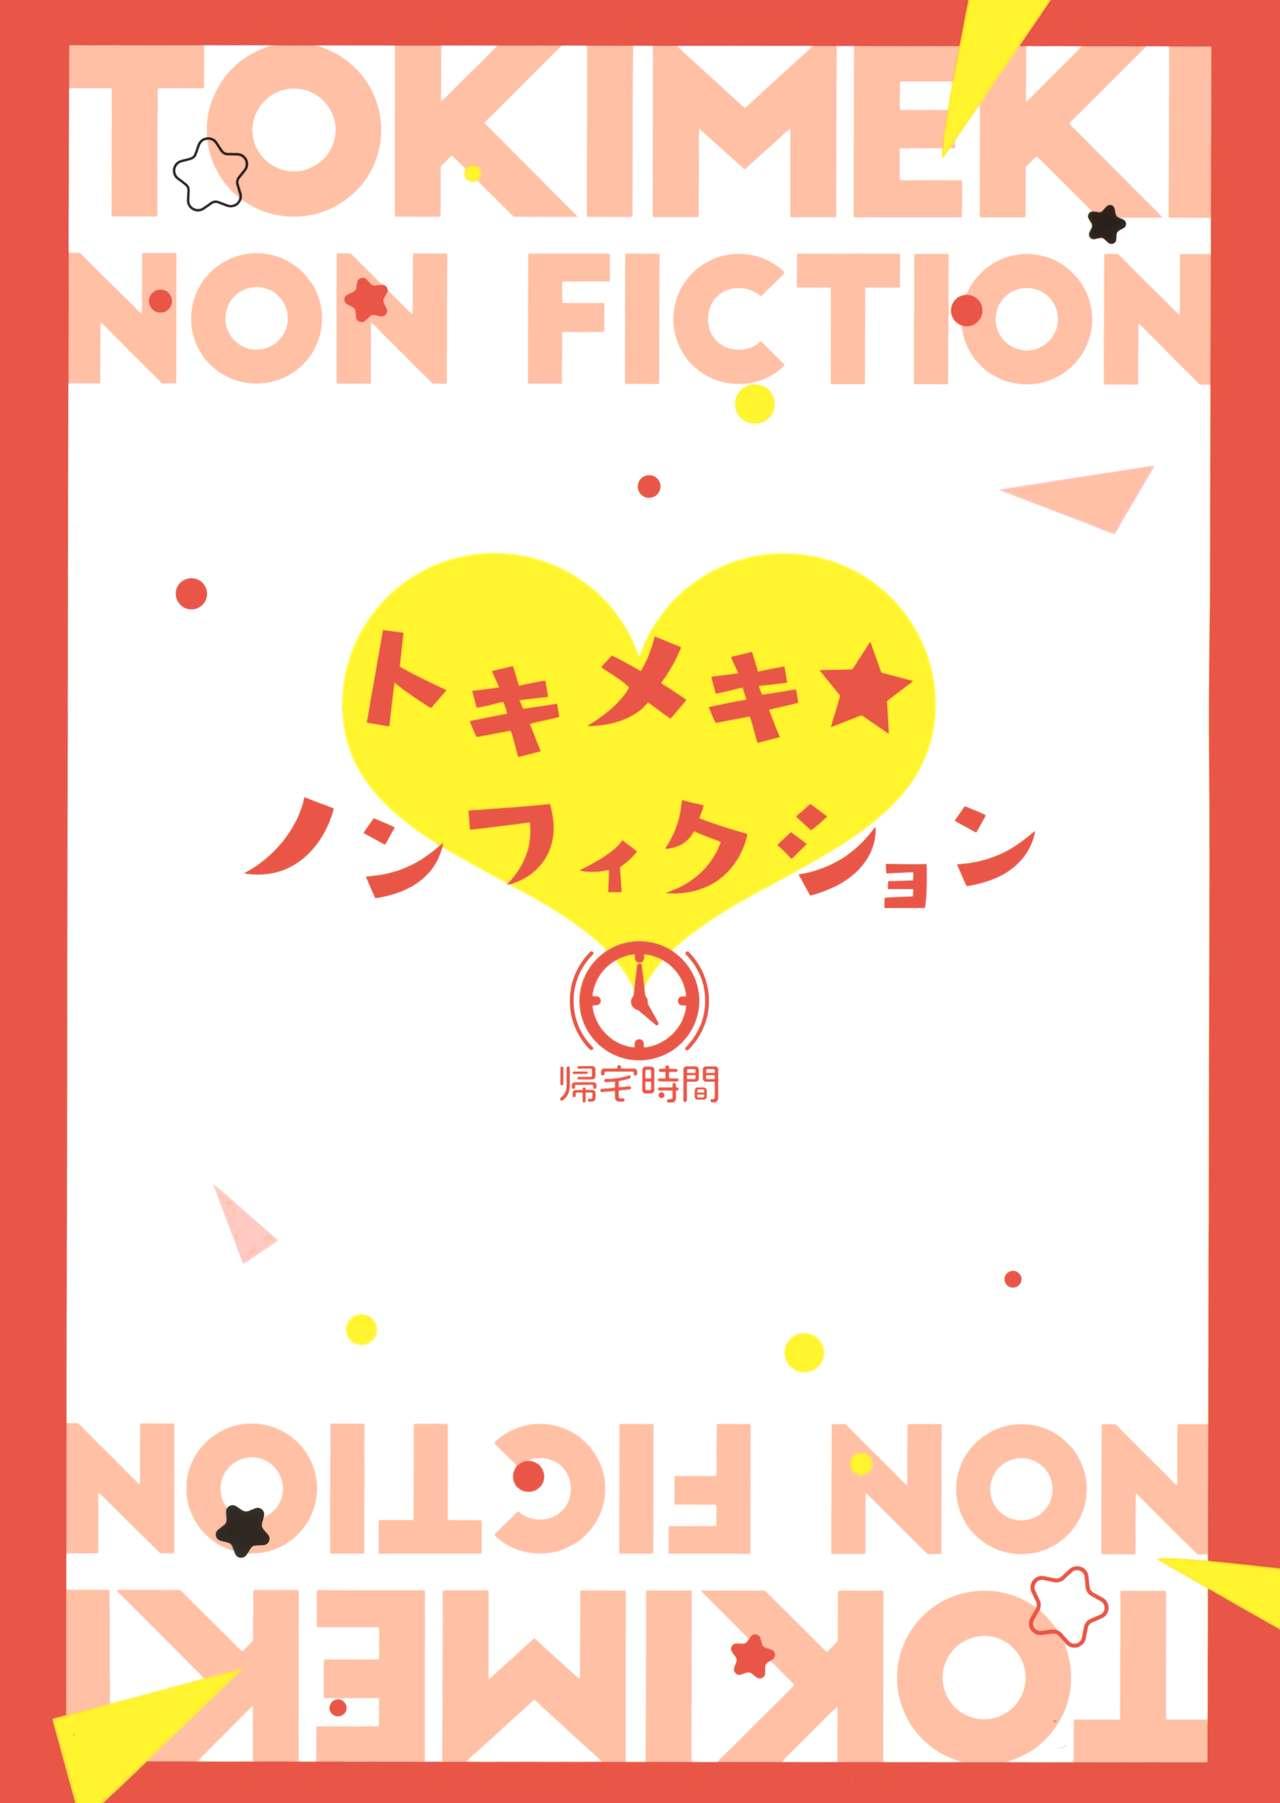 Tokimeki Nonfiction 27